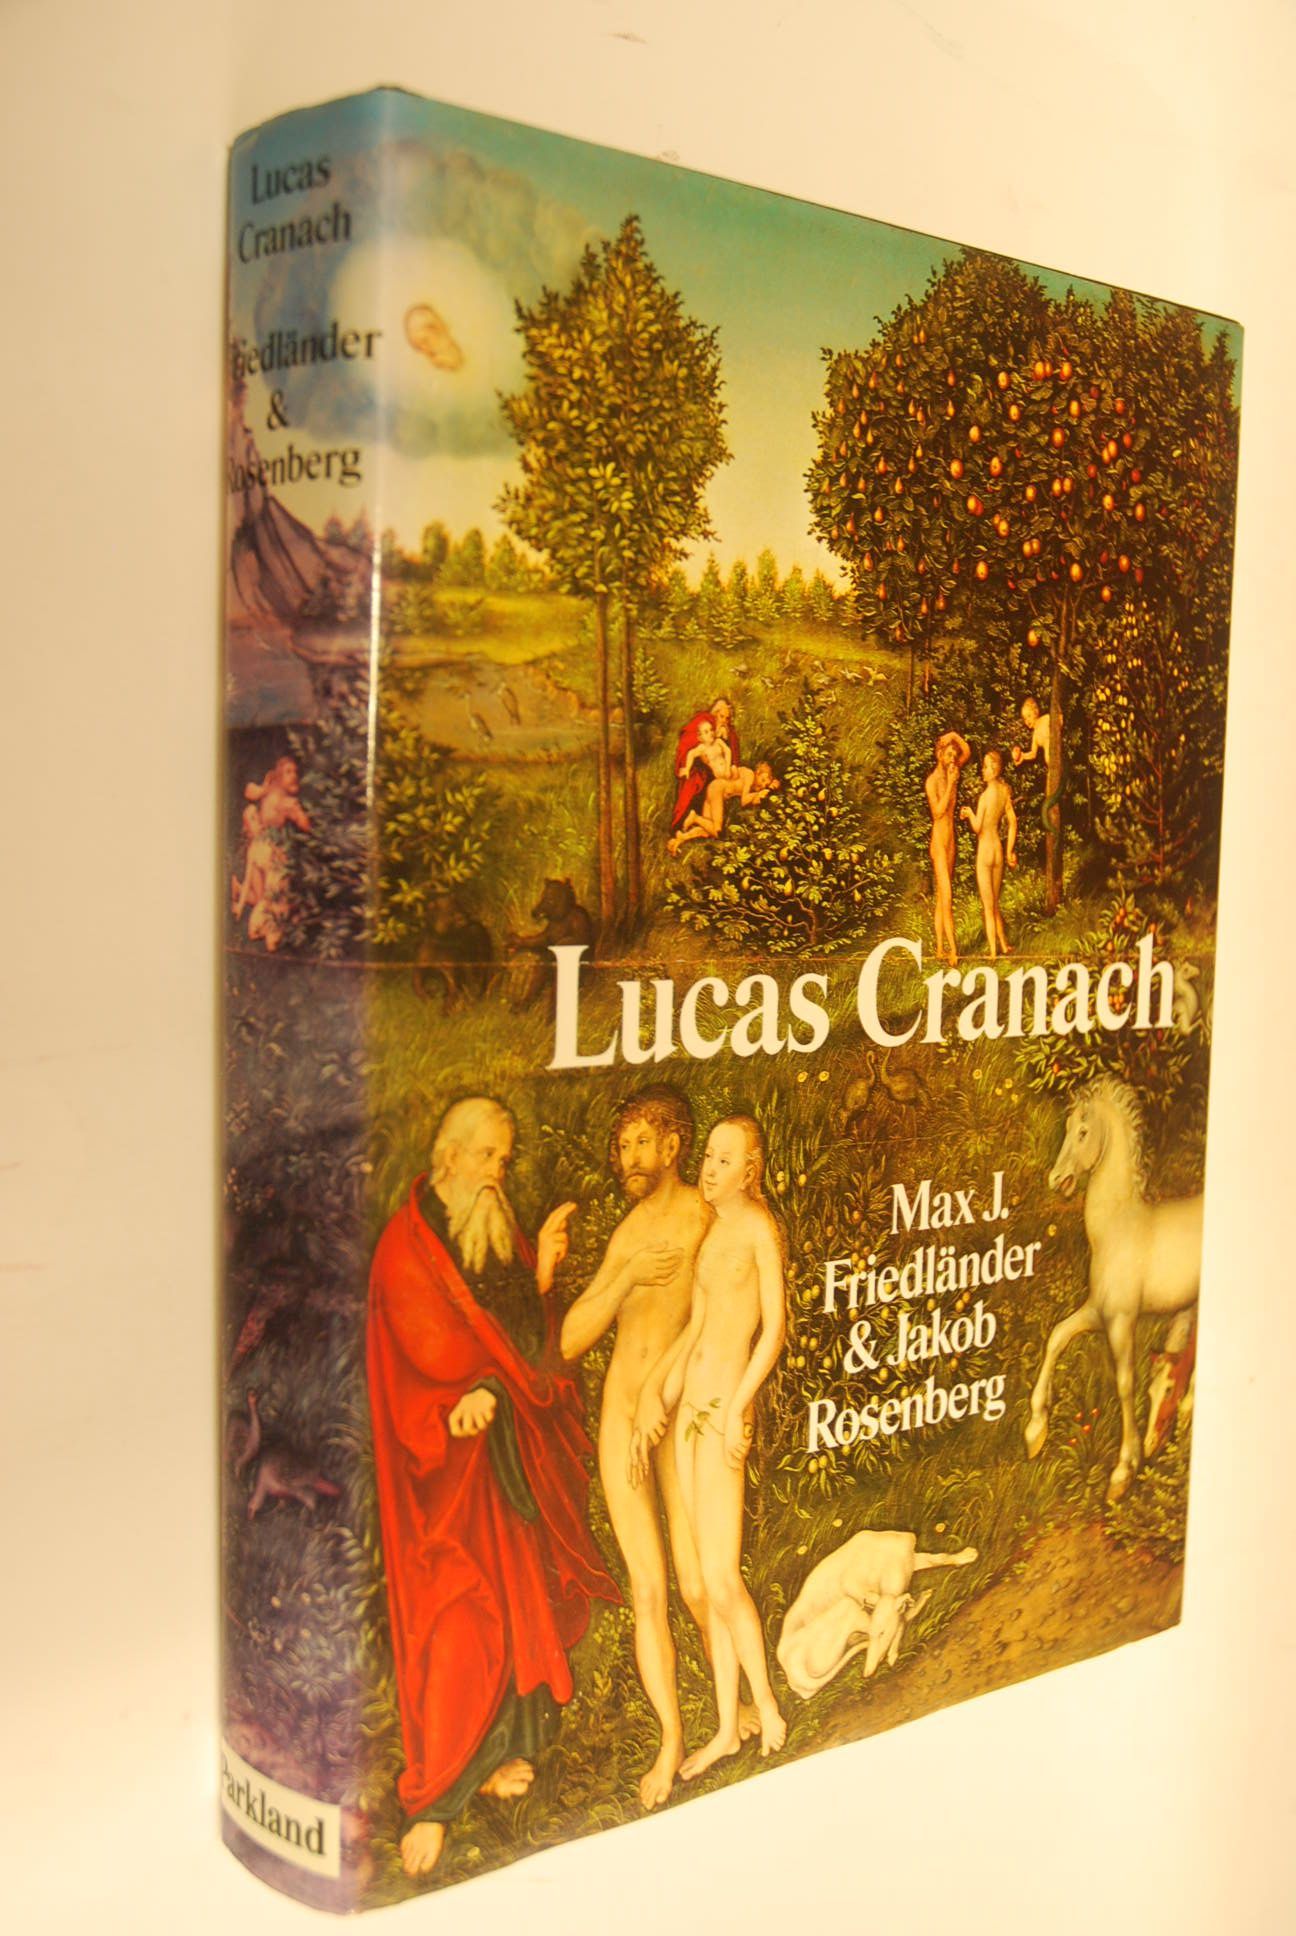 Die Gemälde von Lucas Cranach. ; Jakob Rosenberg [Hrsg. dieser Ausg.: Gary Schwartz] - Friedländer, Max J., Jakob Rosenberg und Lucas Cranach